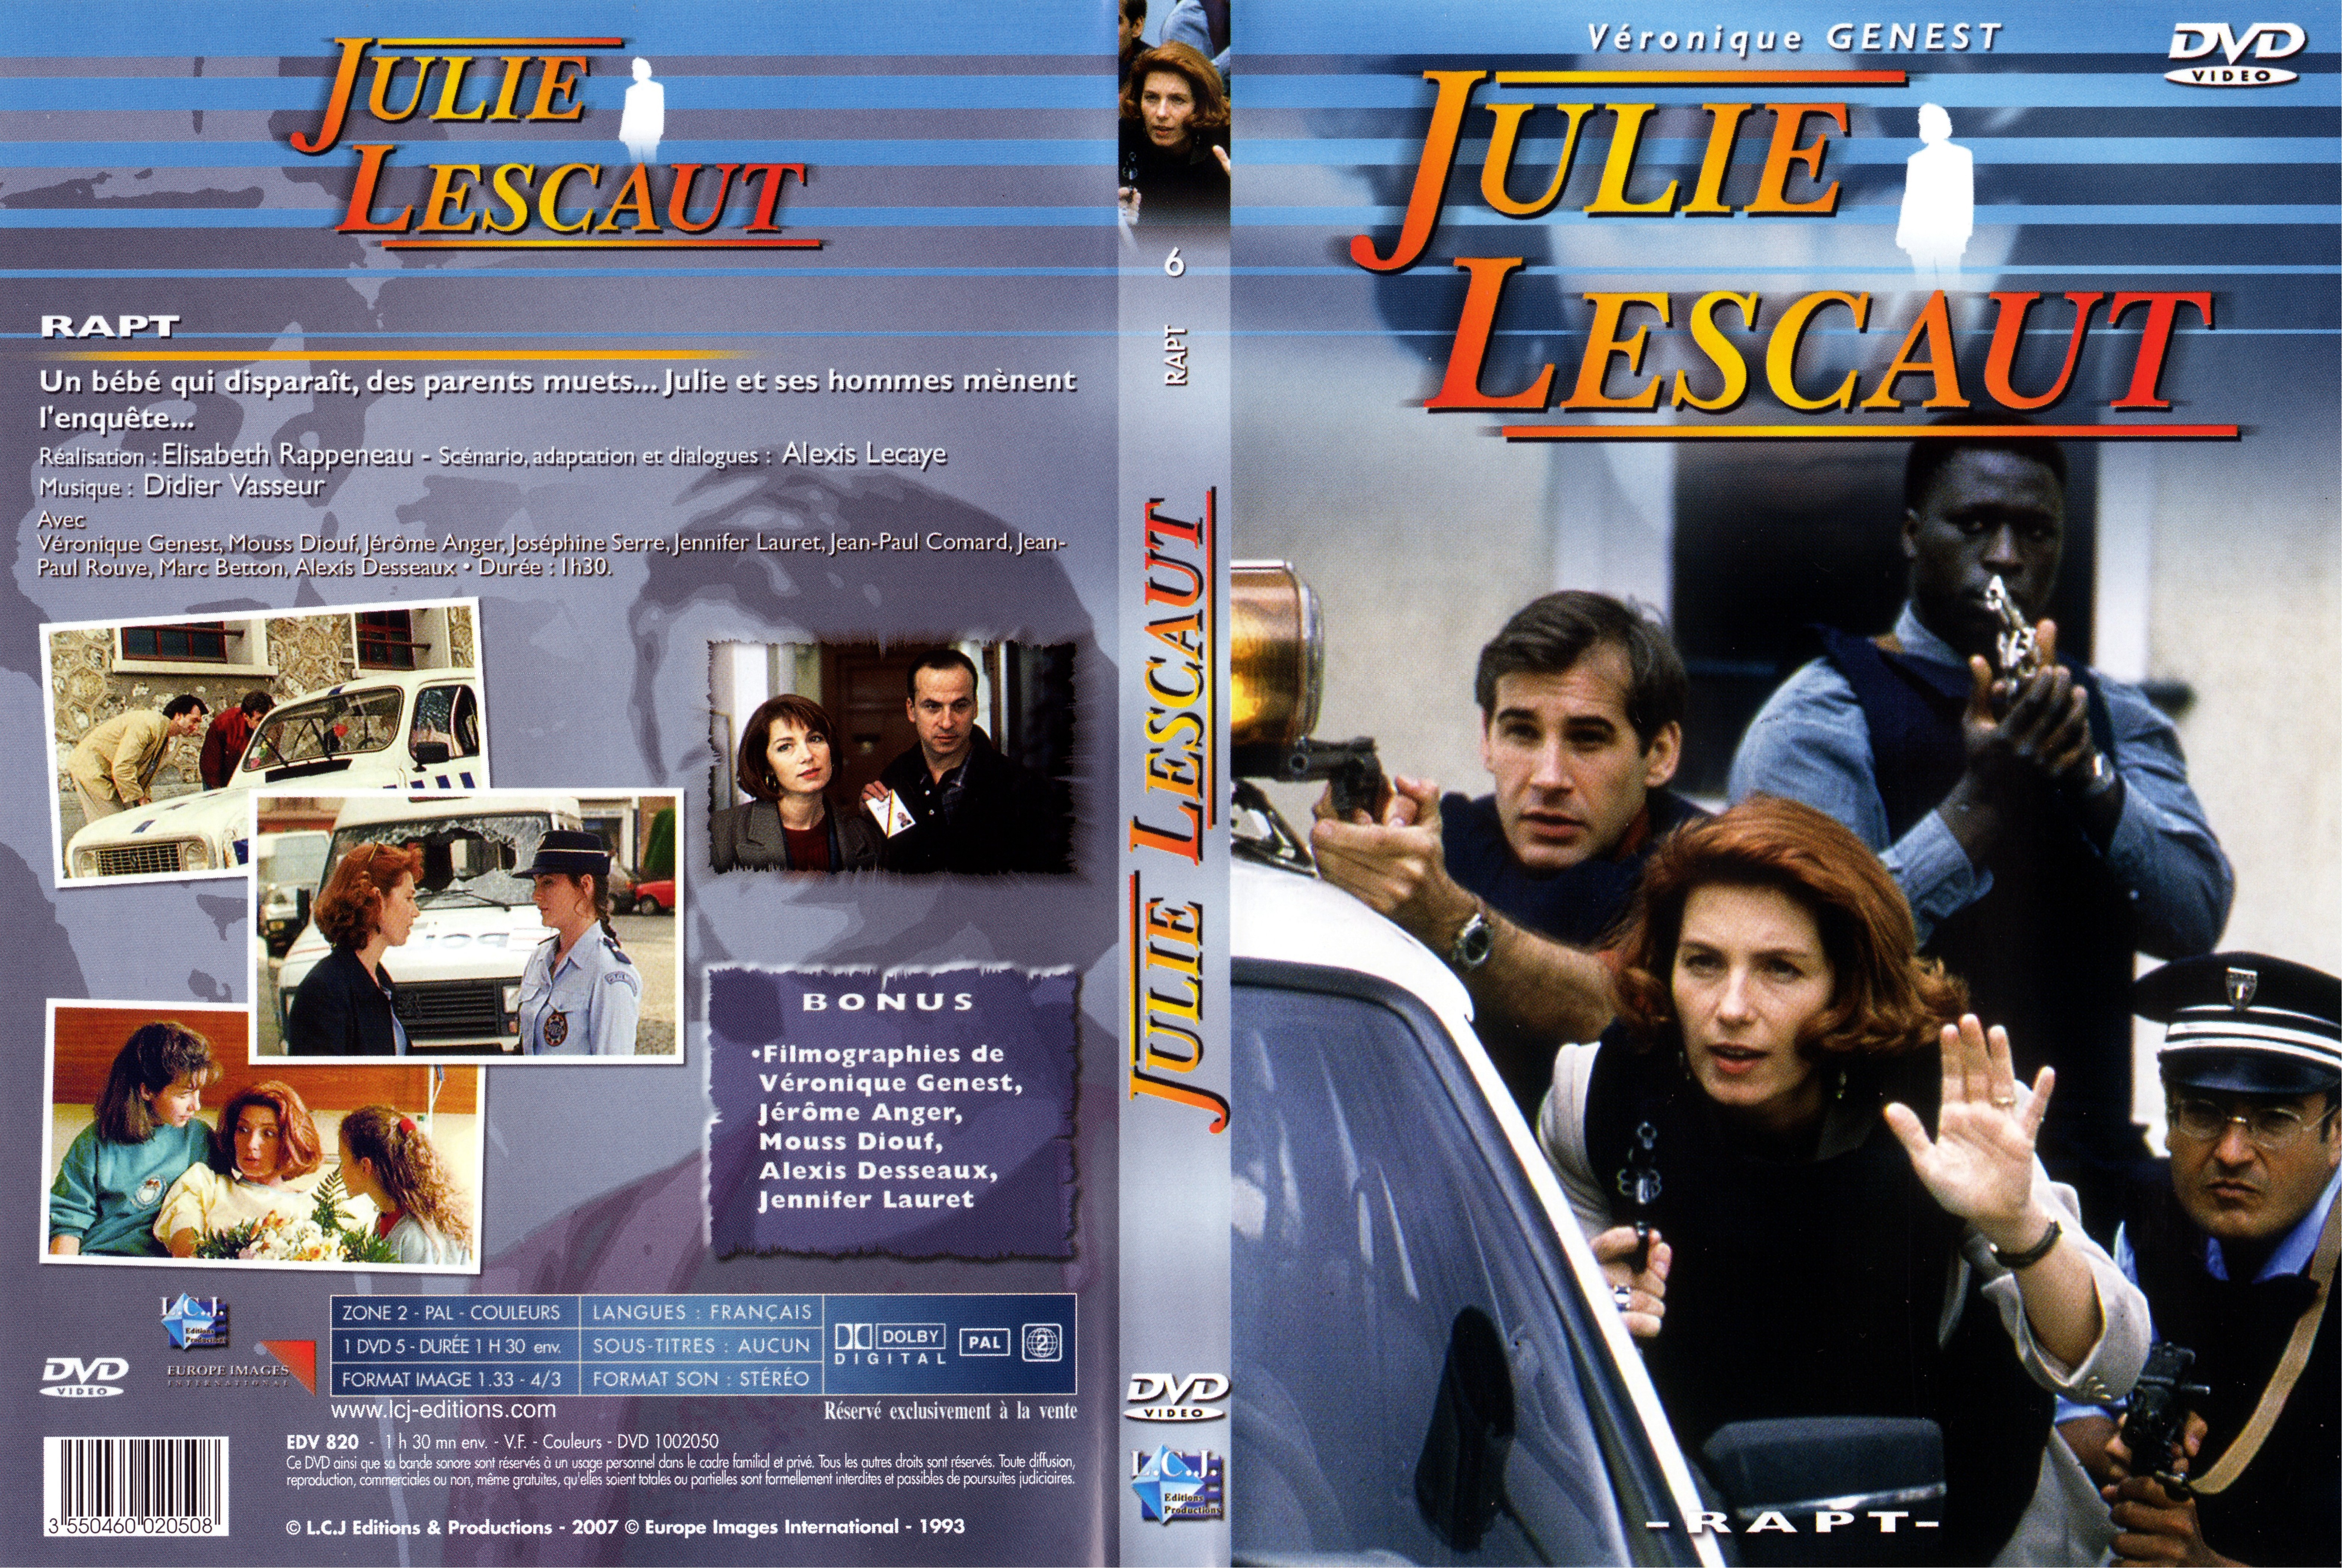 Jaquette DVD Julie Lescaut vol 06